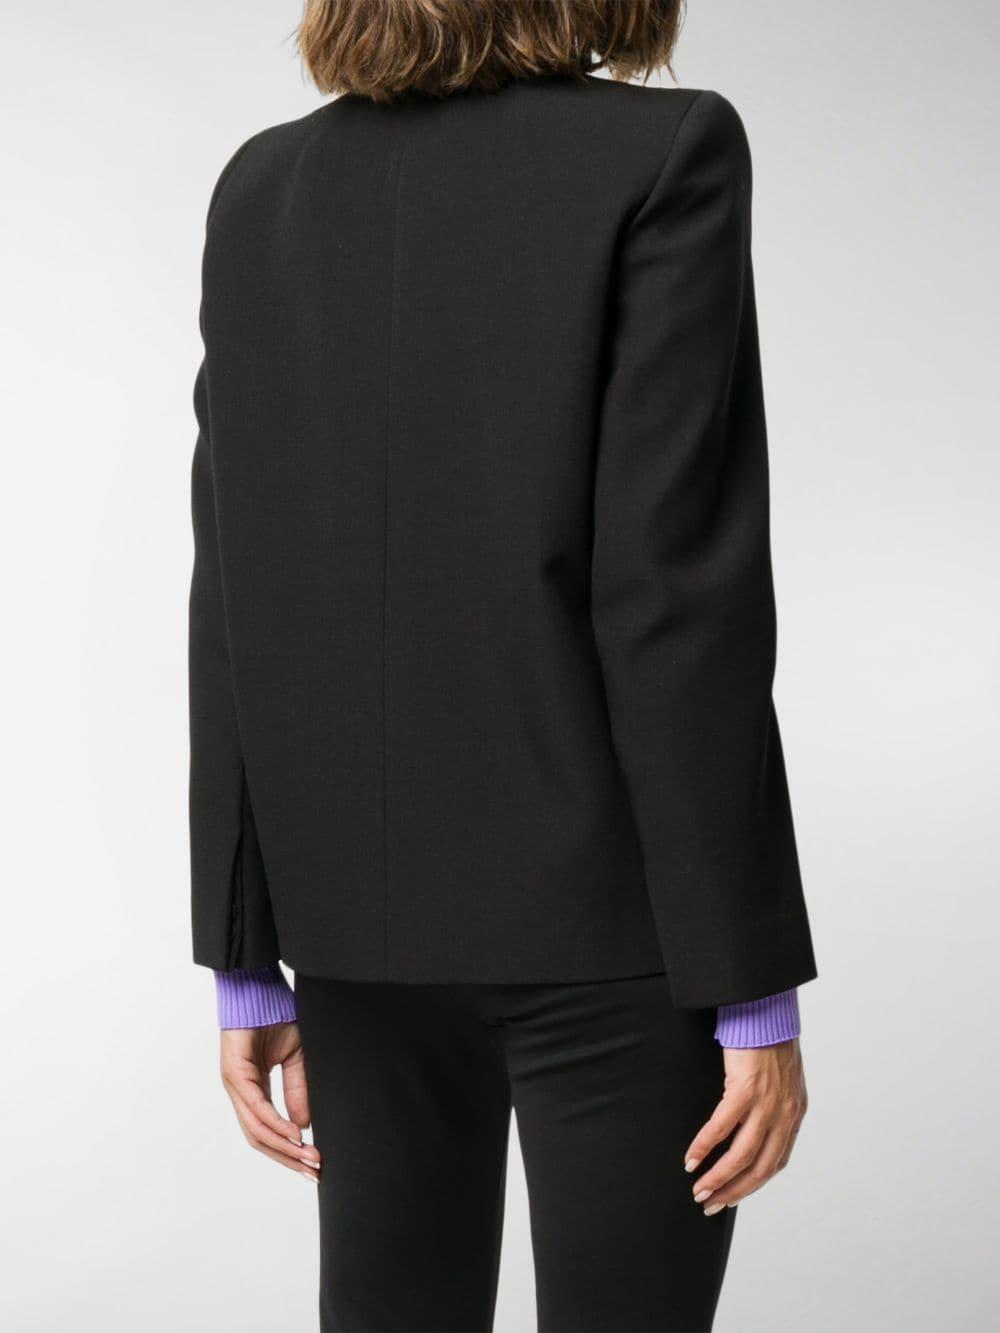 Balenciaga Padded Shoulder Blazer in Black - Lyst